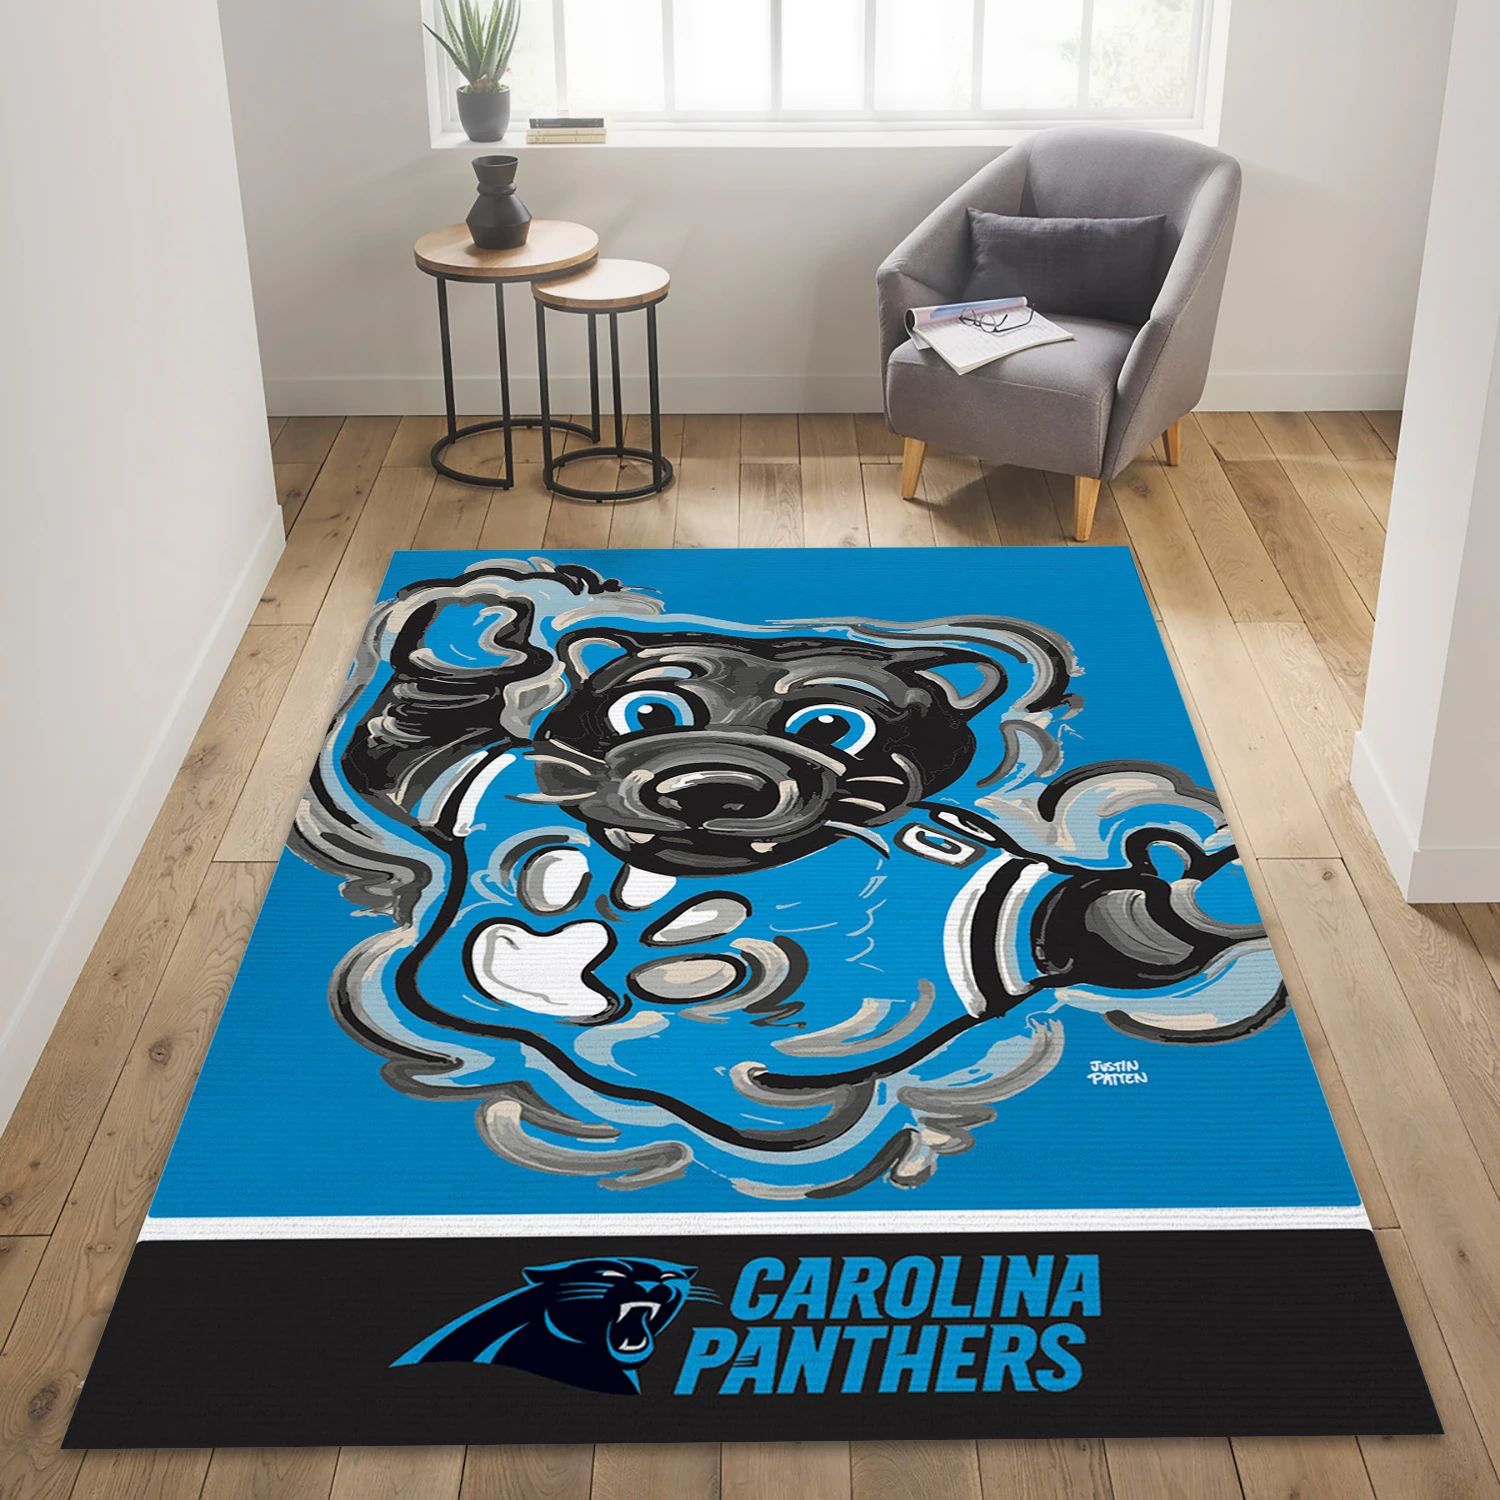 Carolina Panthers NFL Area Rug Carpet